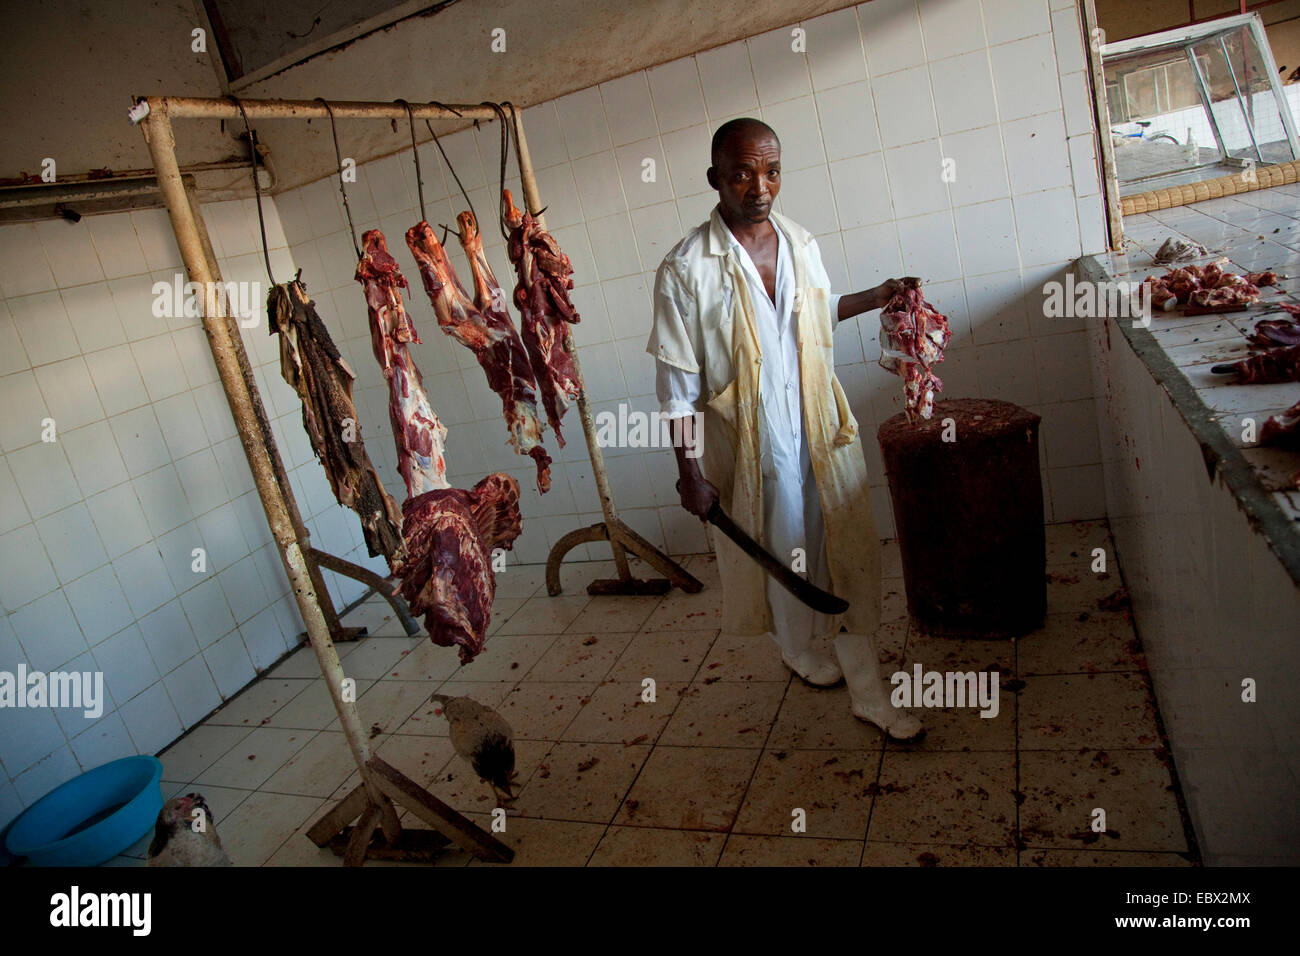 Couper la viande de boucherie sur un rondin de bois, le Rwanda, Kigali, Nyamirambo Banque D'Images